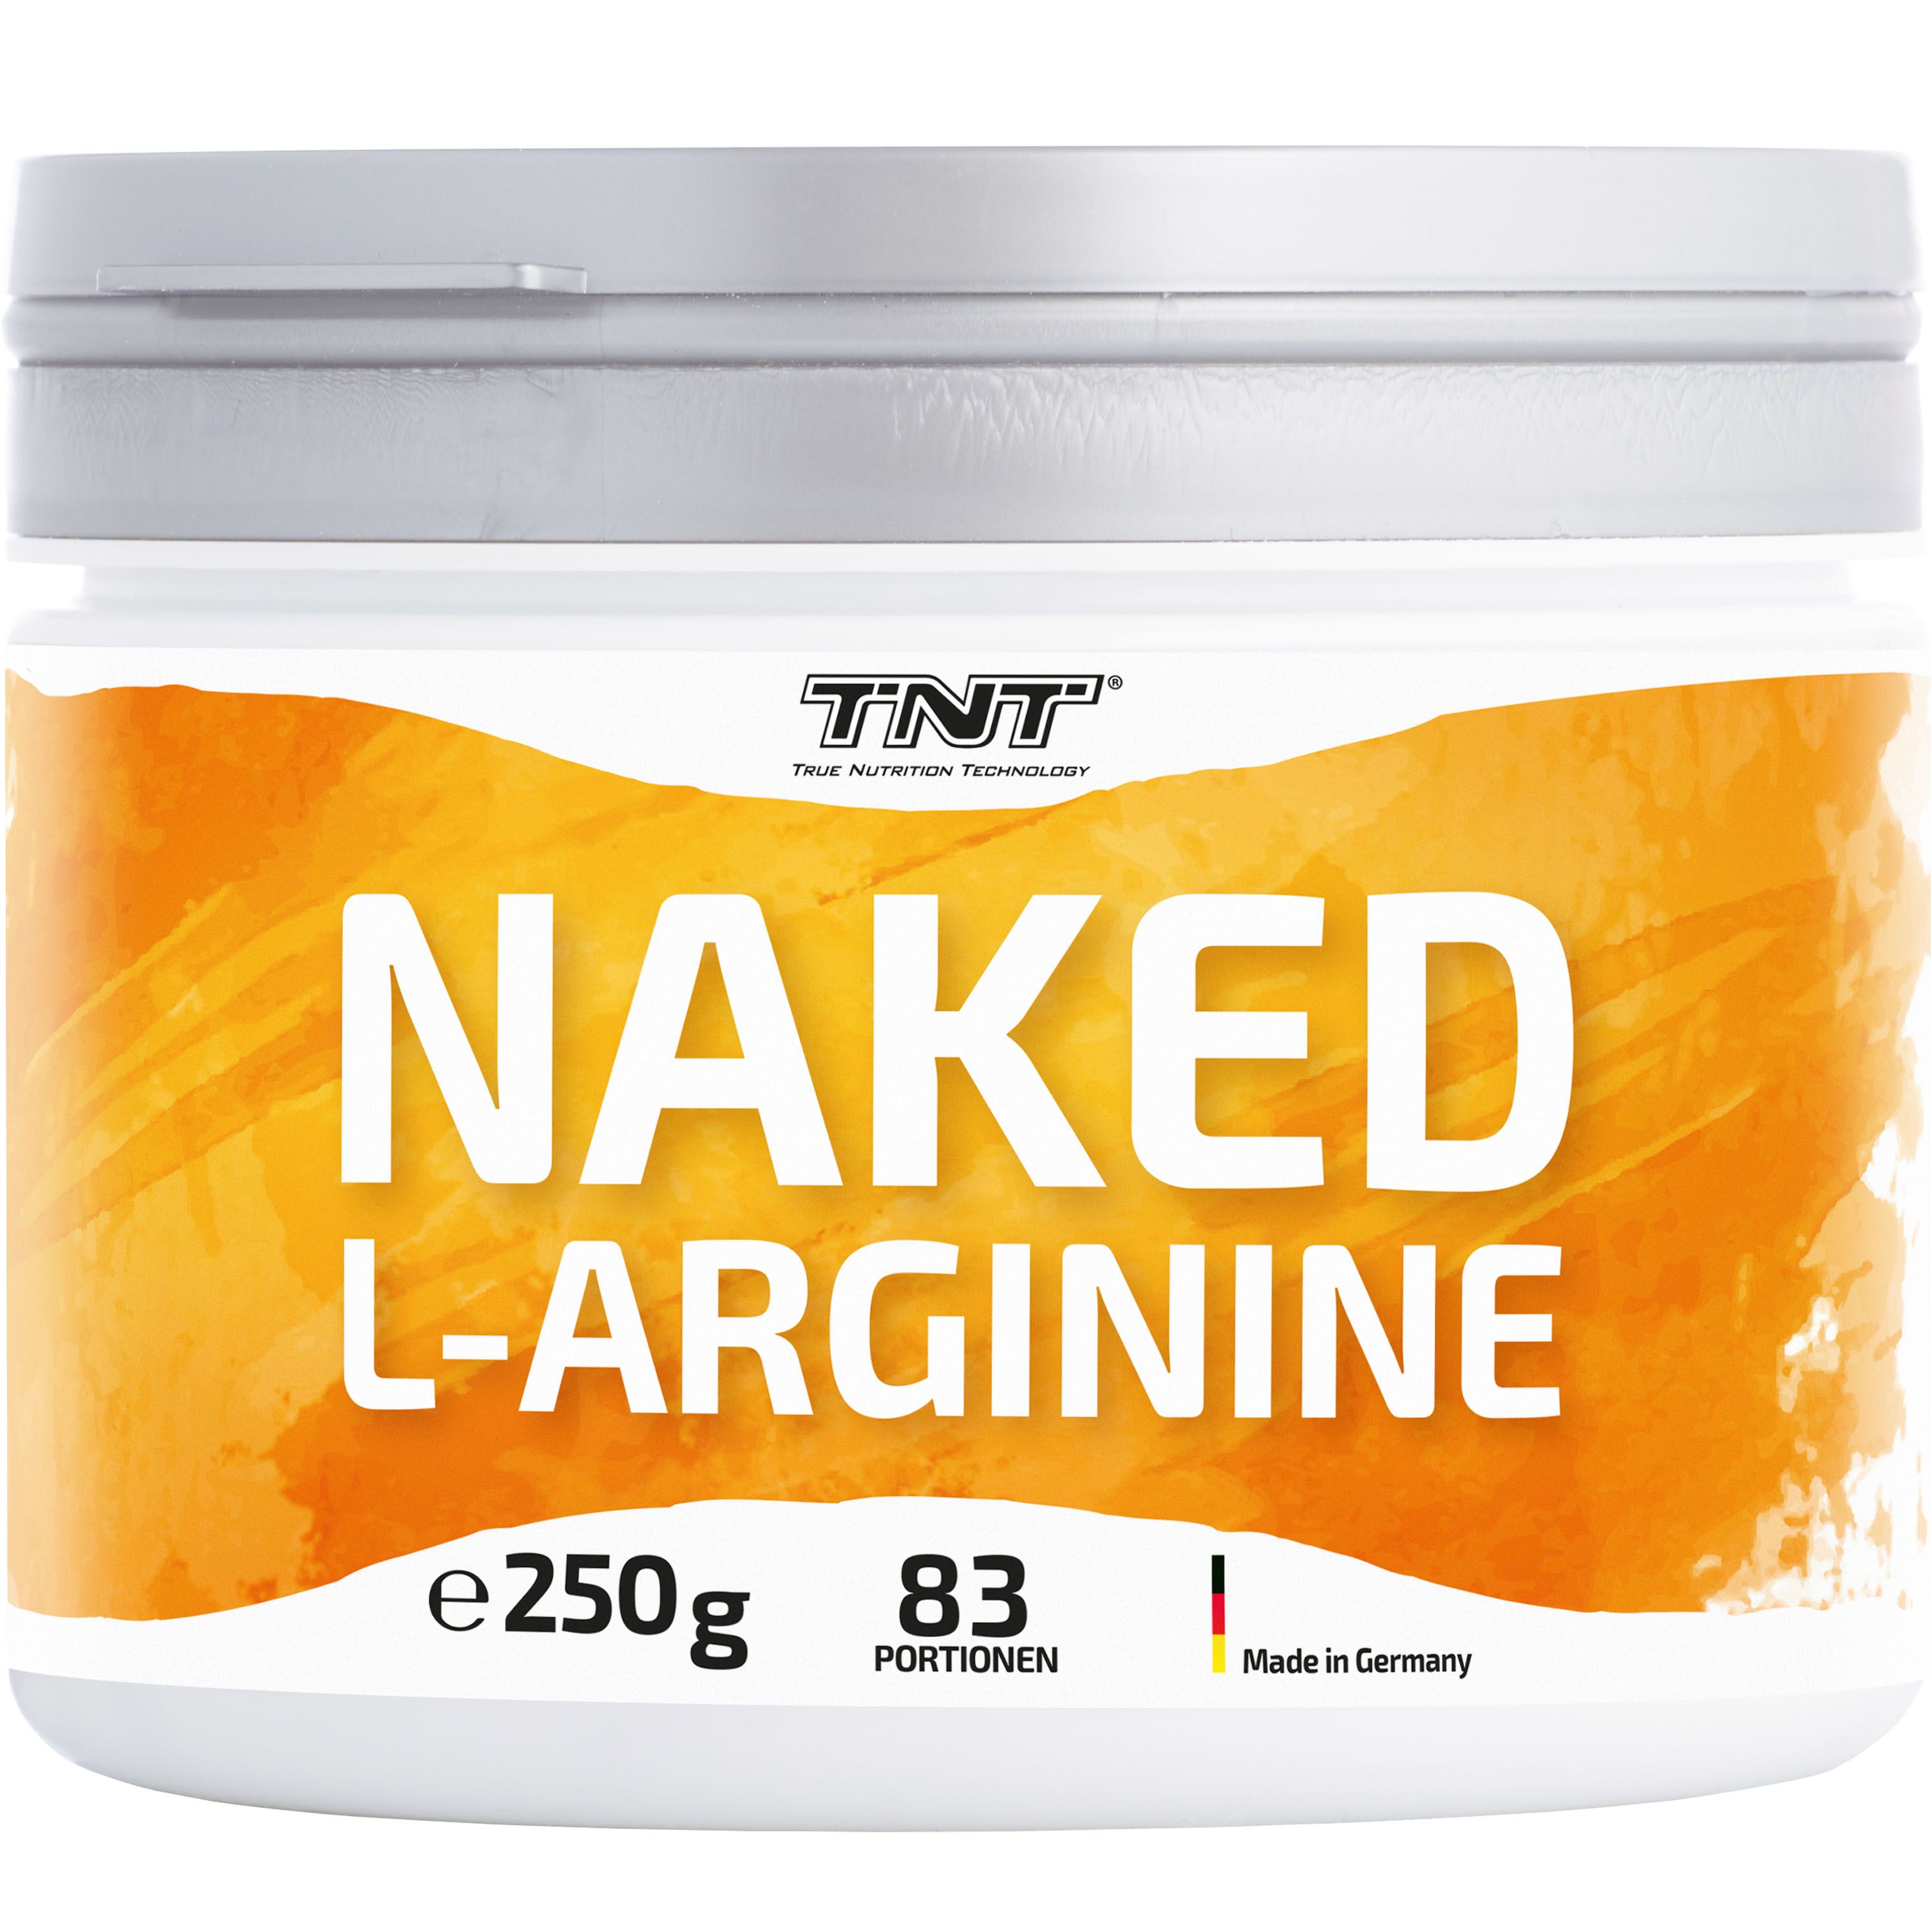 TNT Naked L-Arginine, semiessenzielle Aminosäure für Wachstum und erhöhten Blutfluss